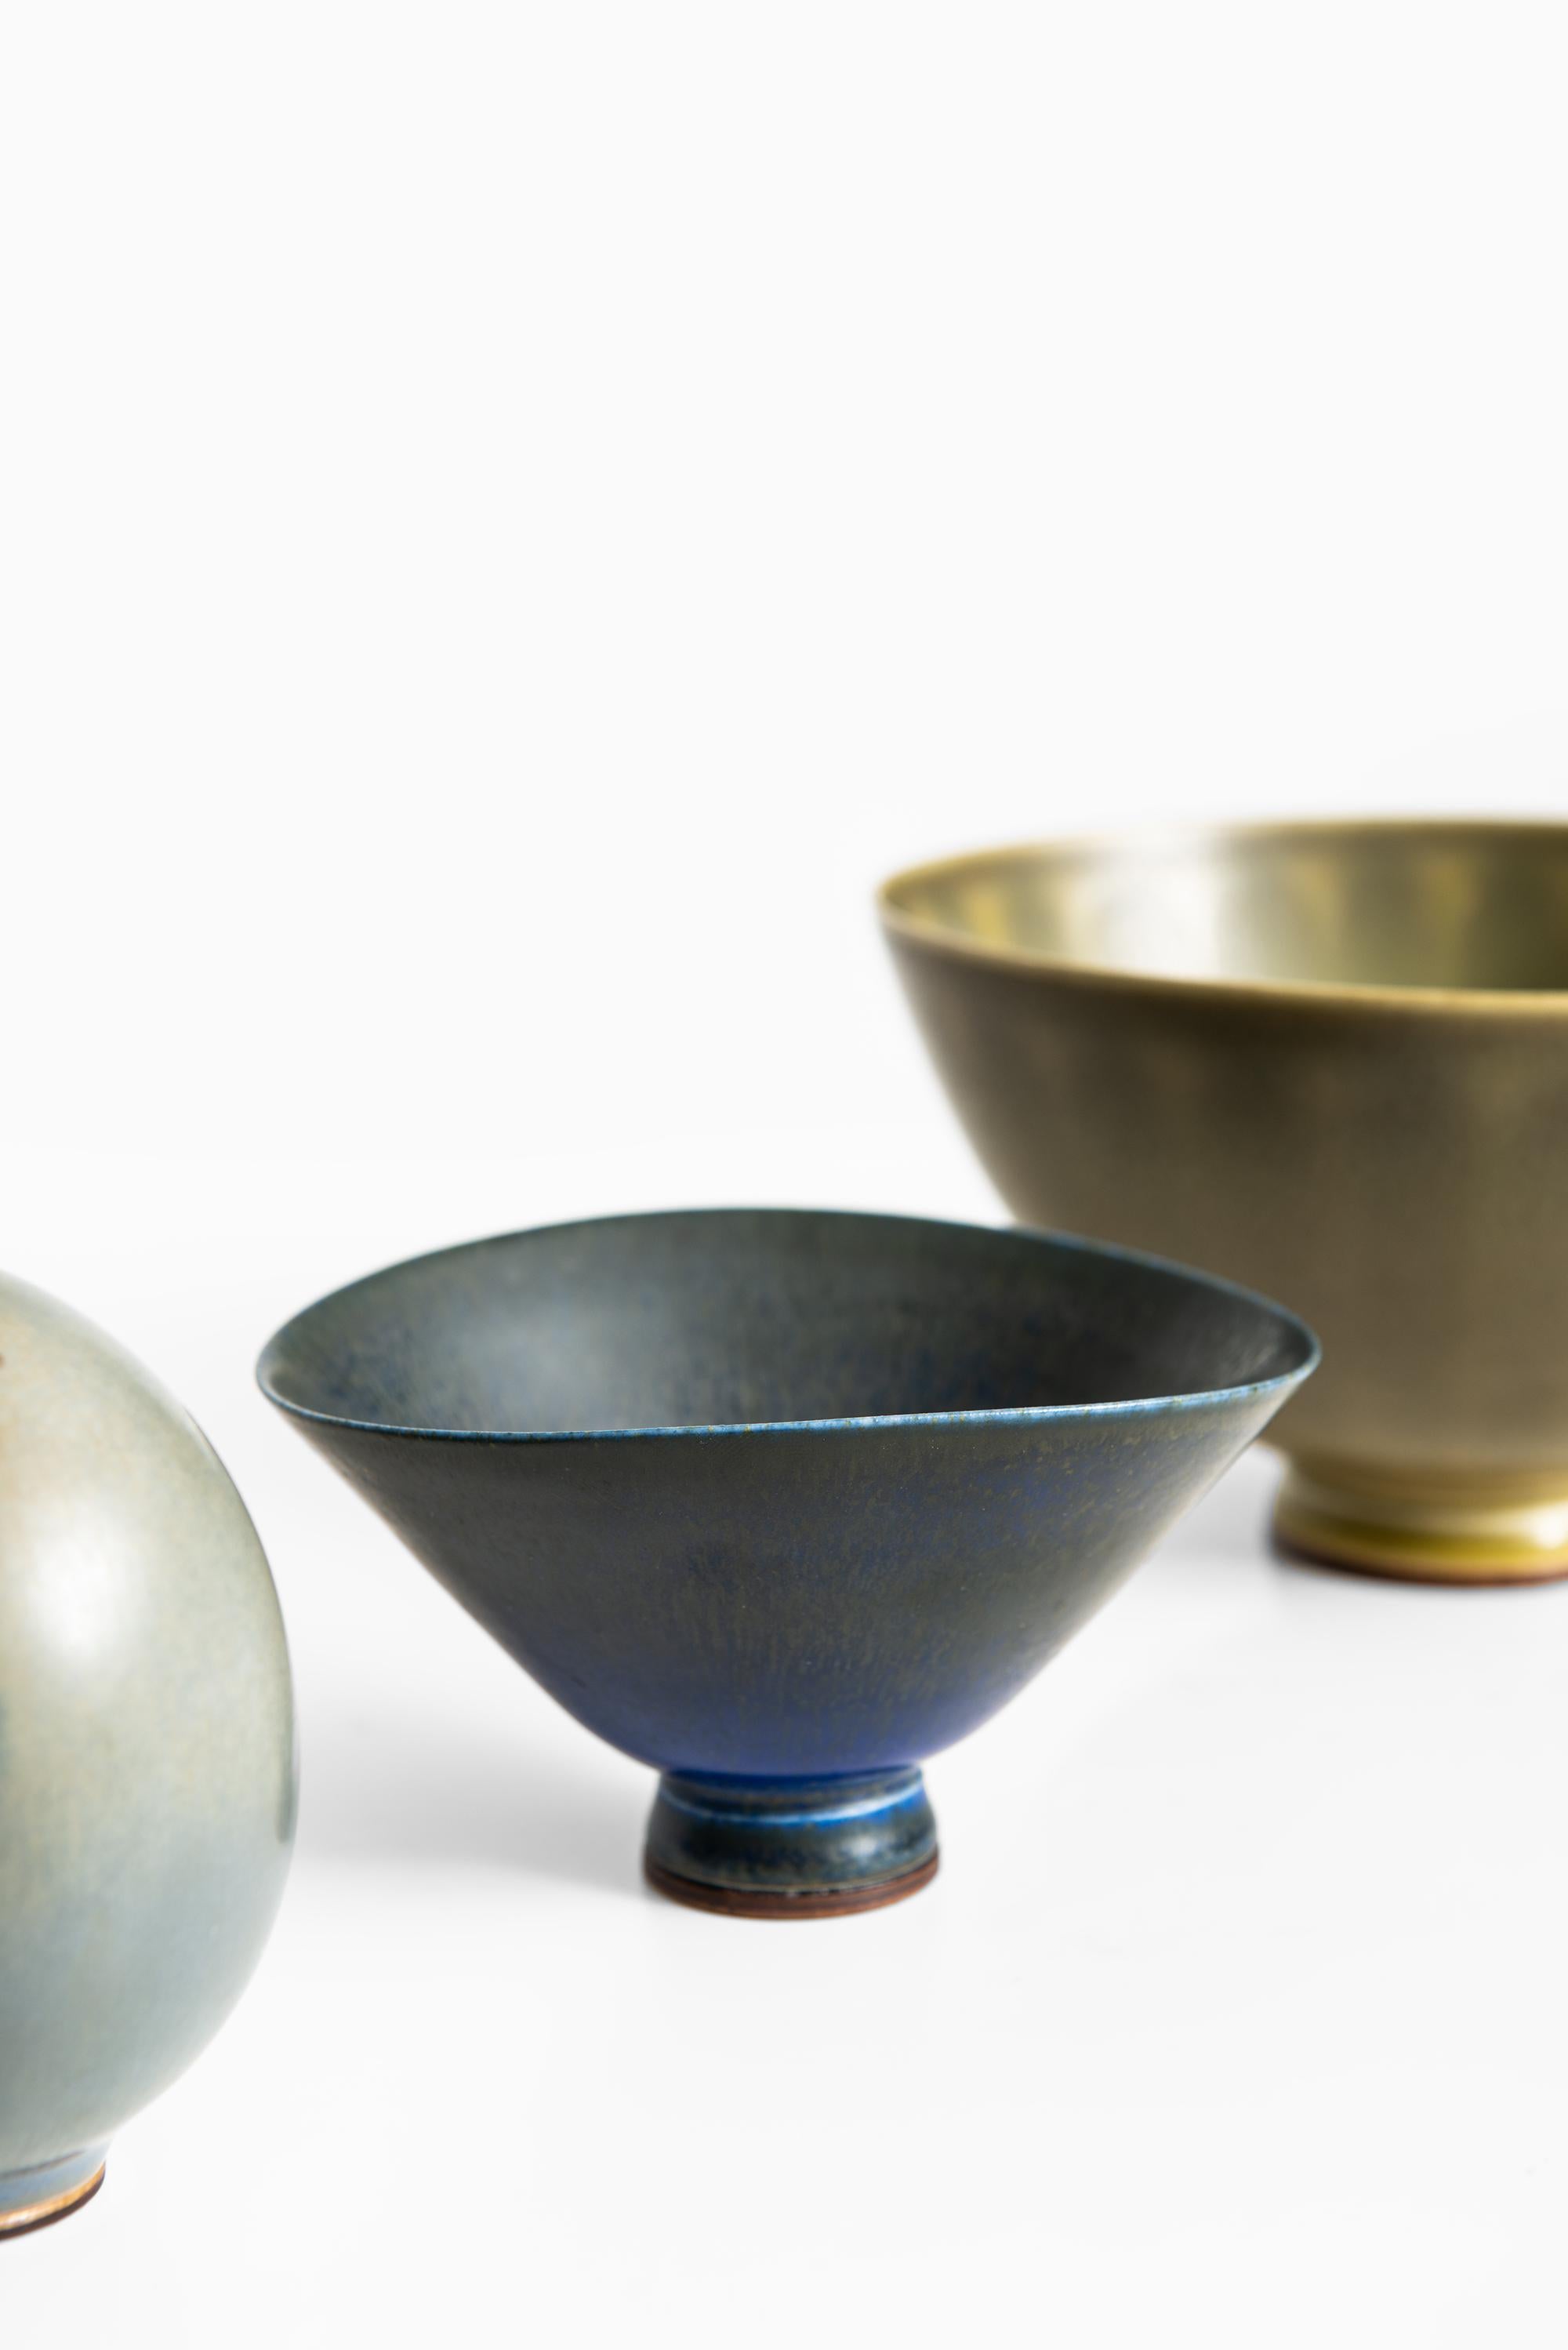 Berndt Friberg Ceramic Vases by Gustavsberg in Sweden 1